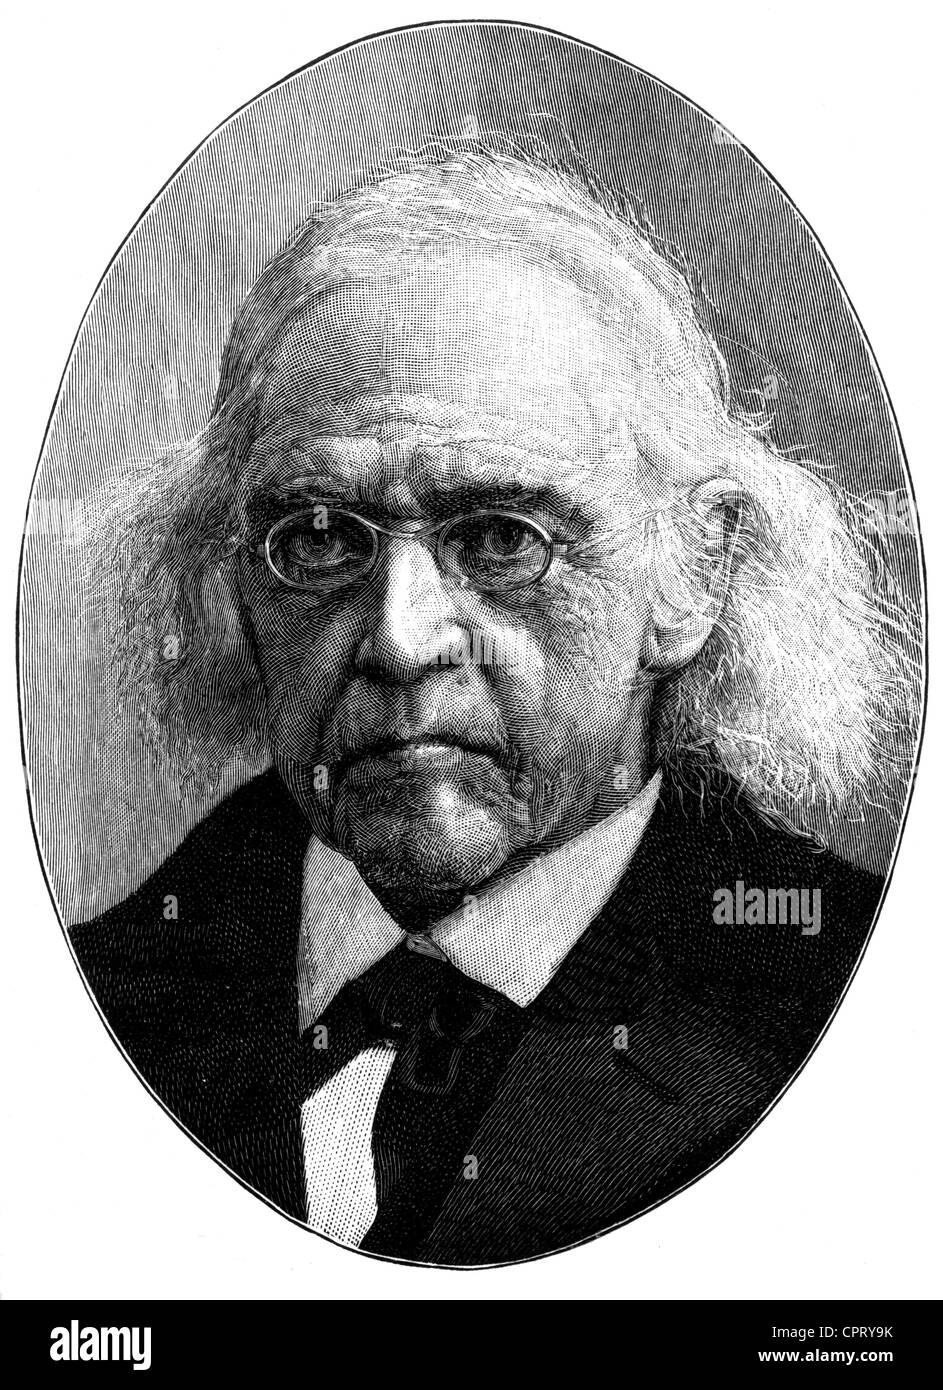 Mommsen, Theodor, 30.11.1817 - 1.11.1903, storico tedesco, ritratto di vecchiaia, basato su fotografia, incisione in legno, fine 19th secolo, Foto Stock